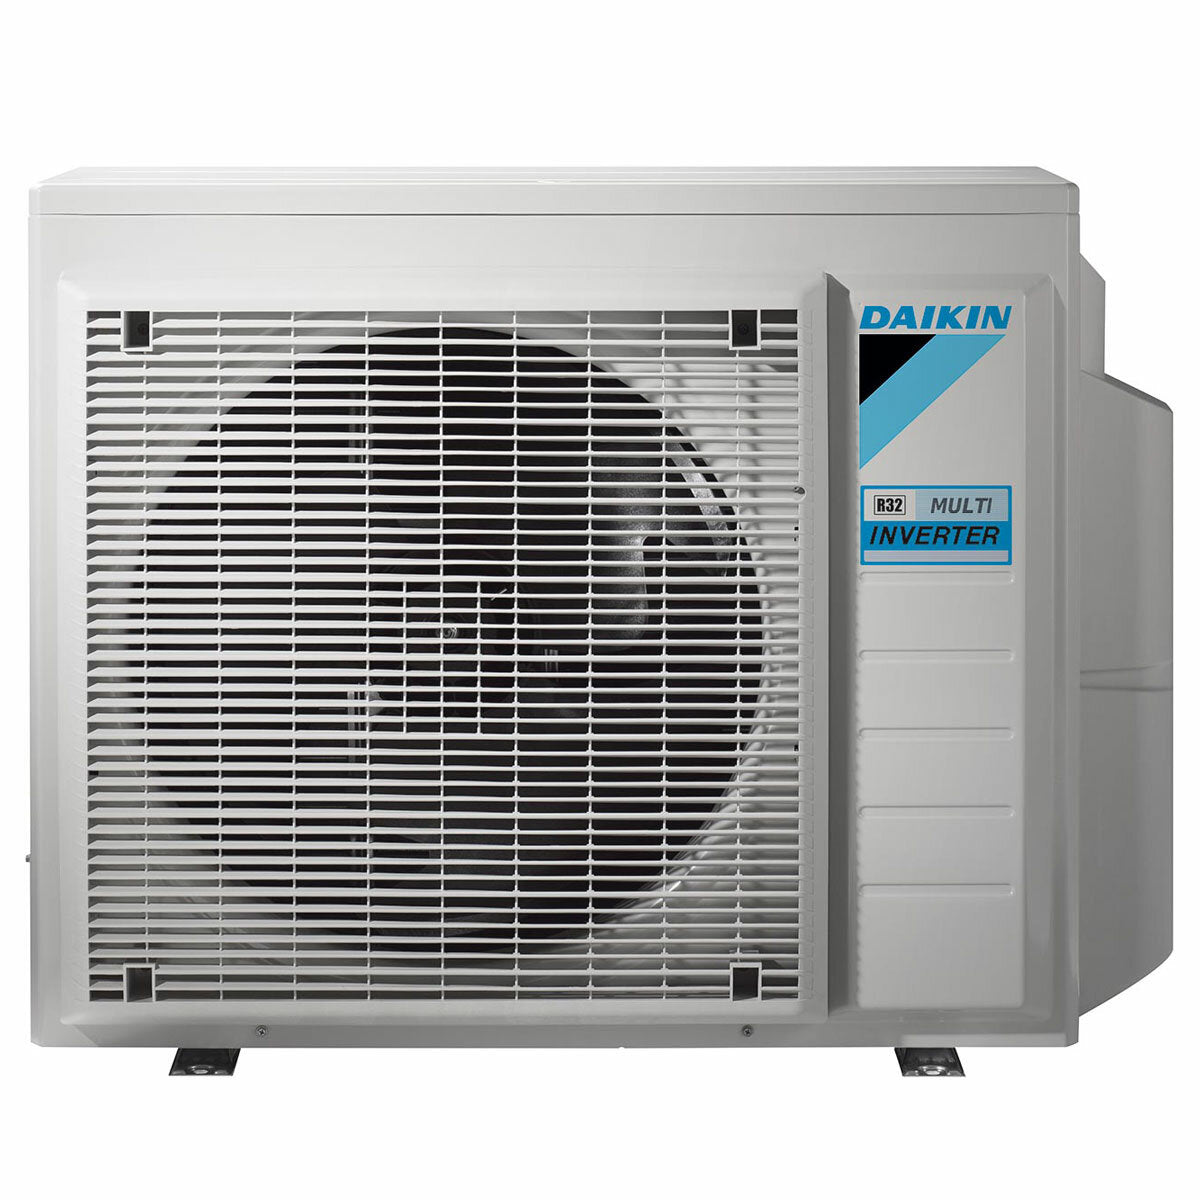 Daikin Emura Klimaanlage 3 Split Panels 7000+9000+9000+18000 BTU Wechselrichter A++ WLAN Außengerät 7,4 kW Weiß